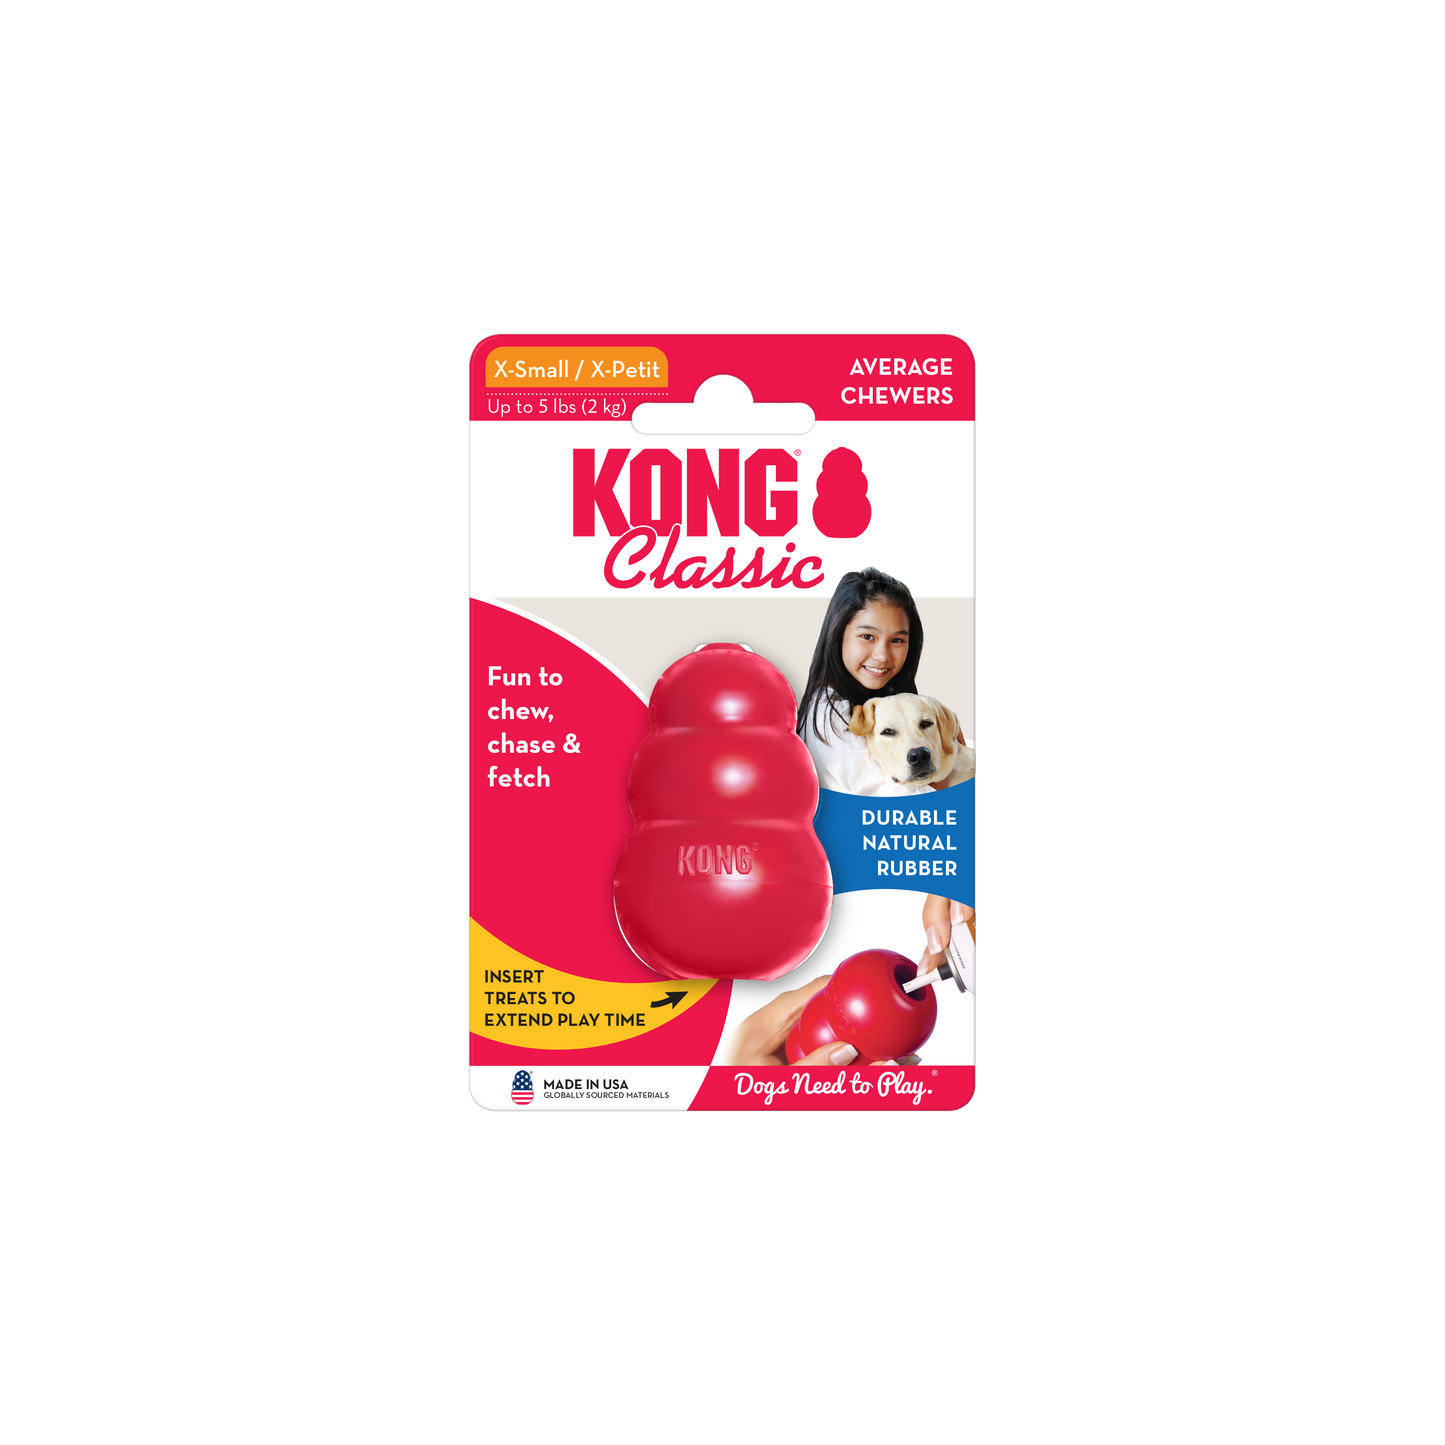 KONG Dog toy